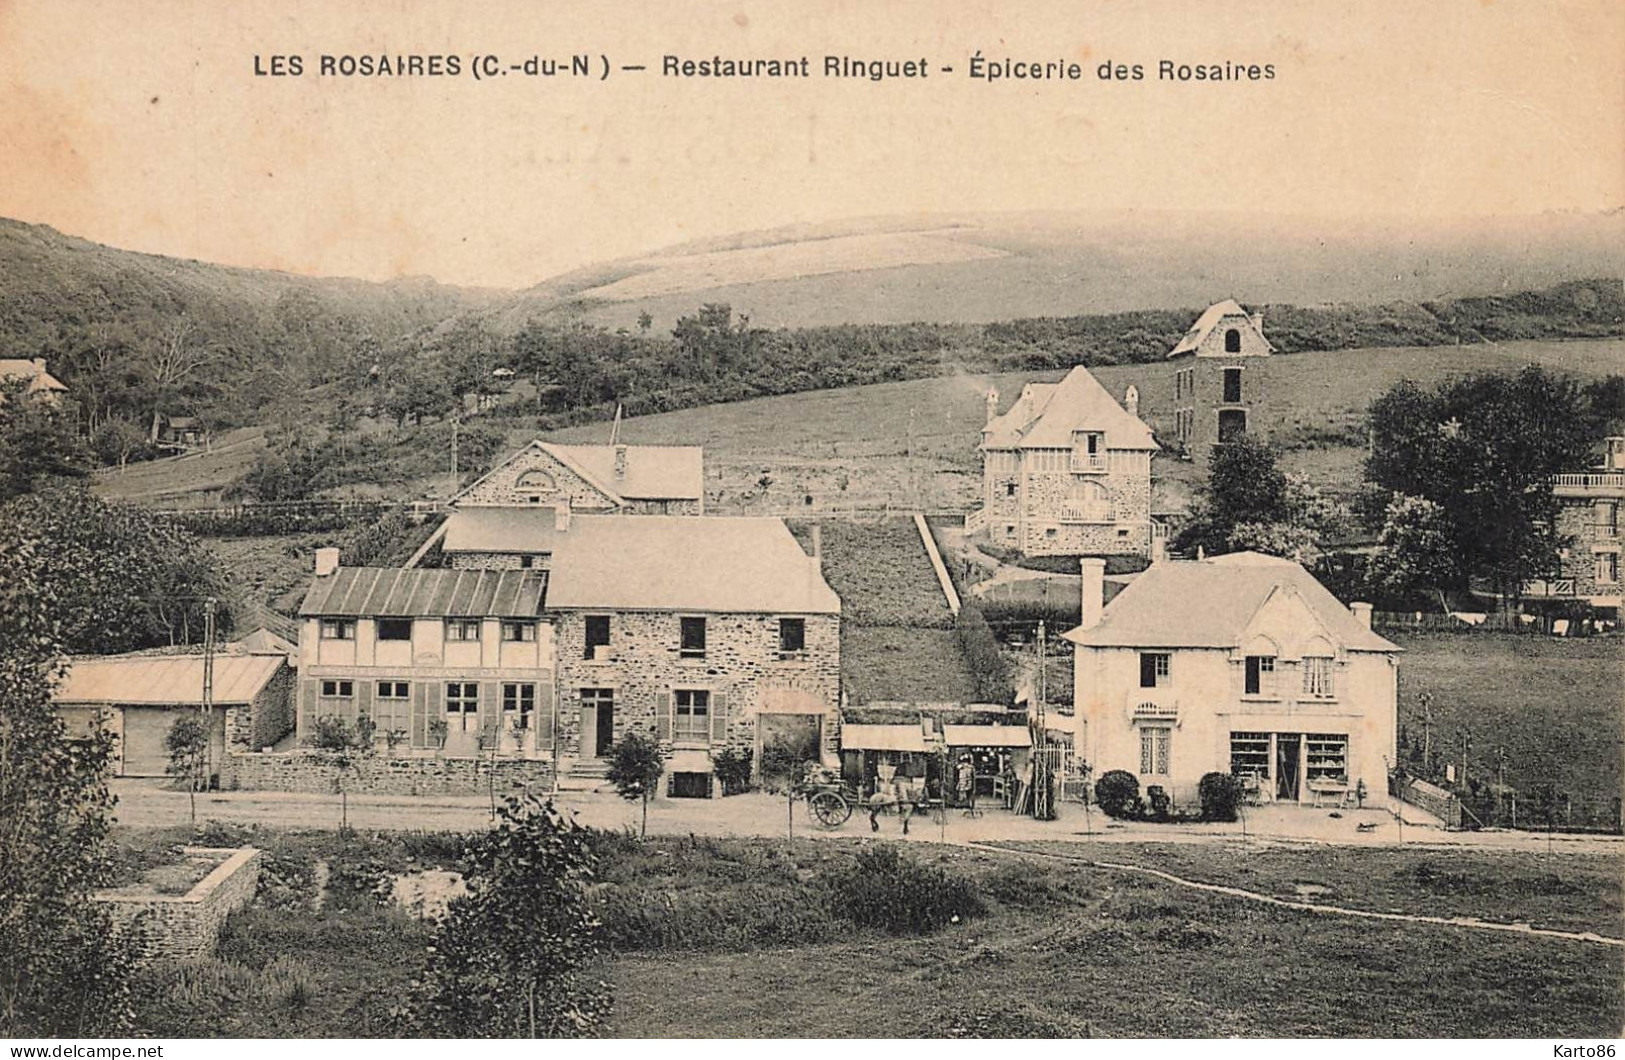 Les Rosaires , Plérin * Le Restaurant RINGUET , Epicerie Des Rosaires * Commerces - Plérin / Saint-Laurent-de-la-Mer